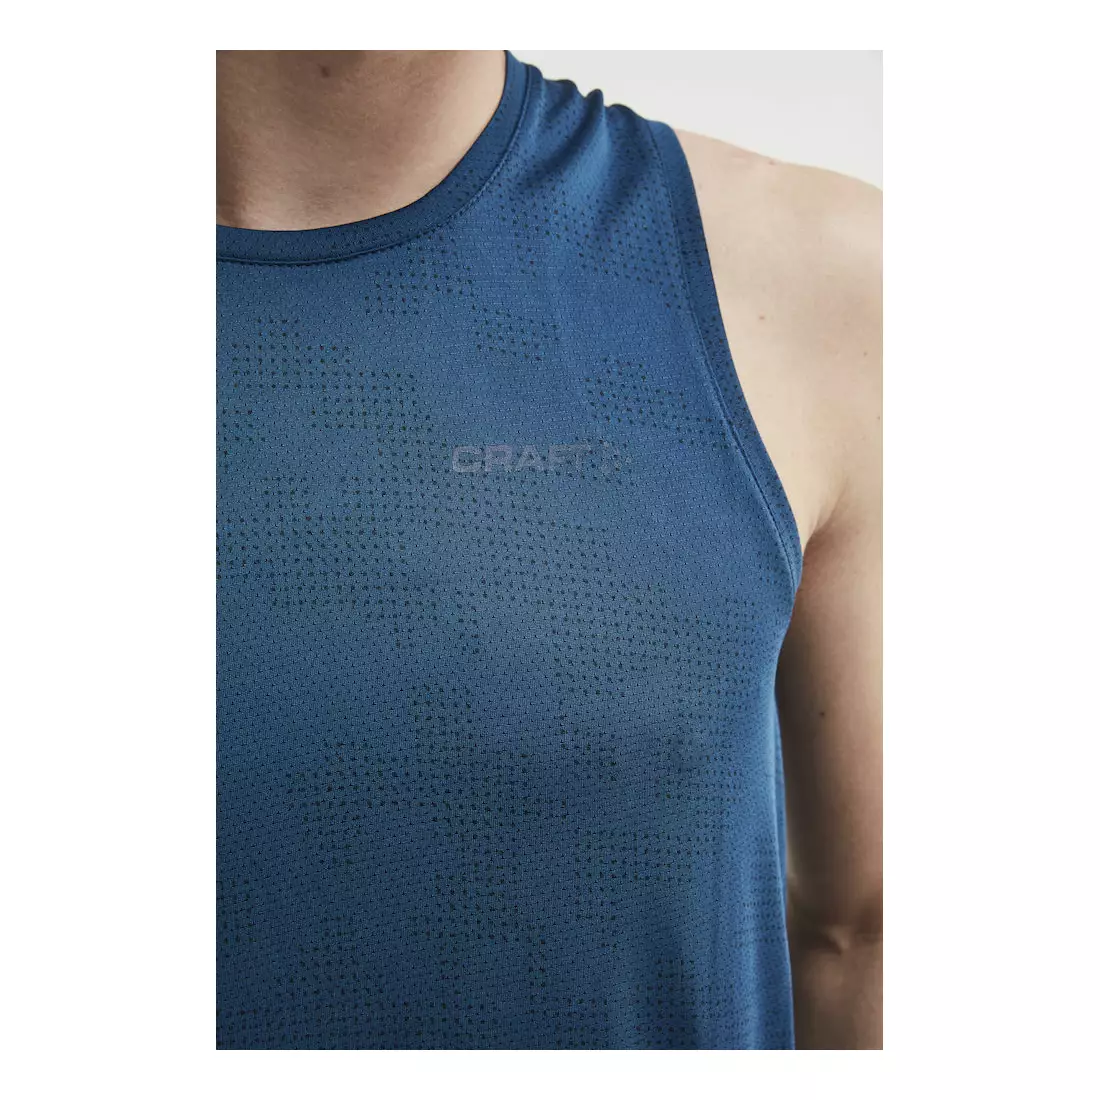 CRAFT EAZE pánske bežecké / športové tričko bez rukávov, modré 1907051-138373